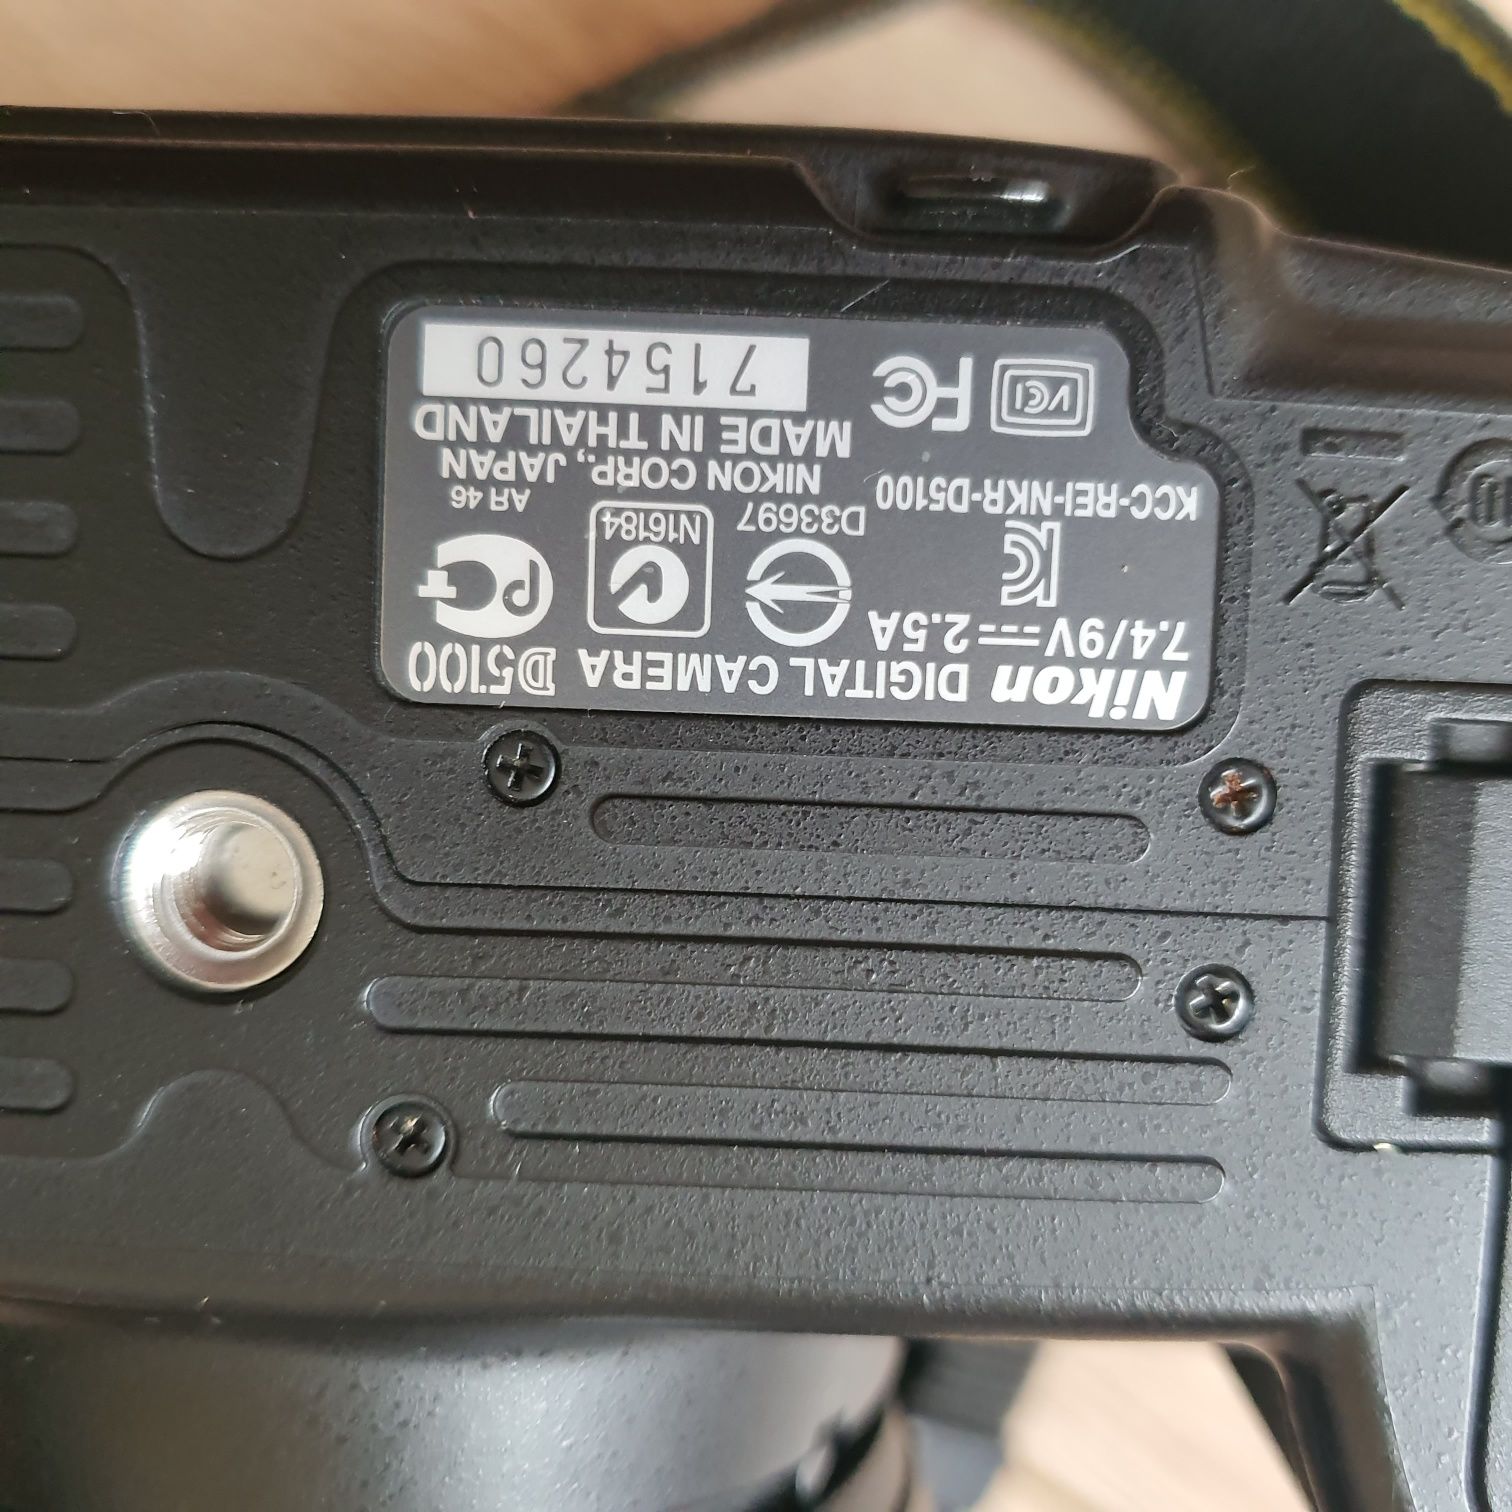 Дзеркальний фотоапарат Nikon D5100